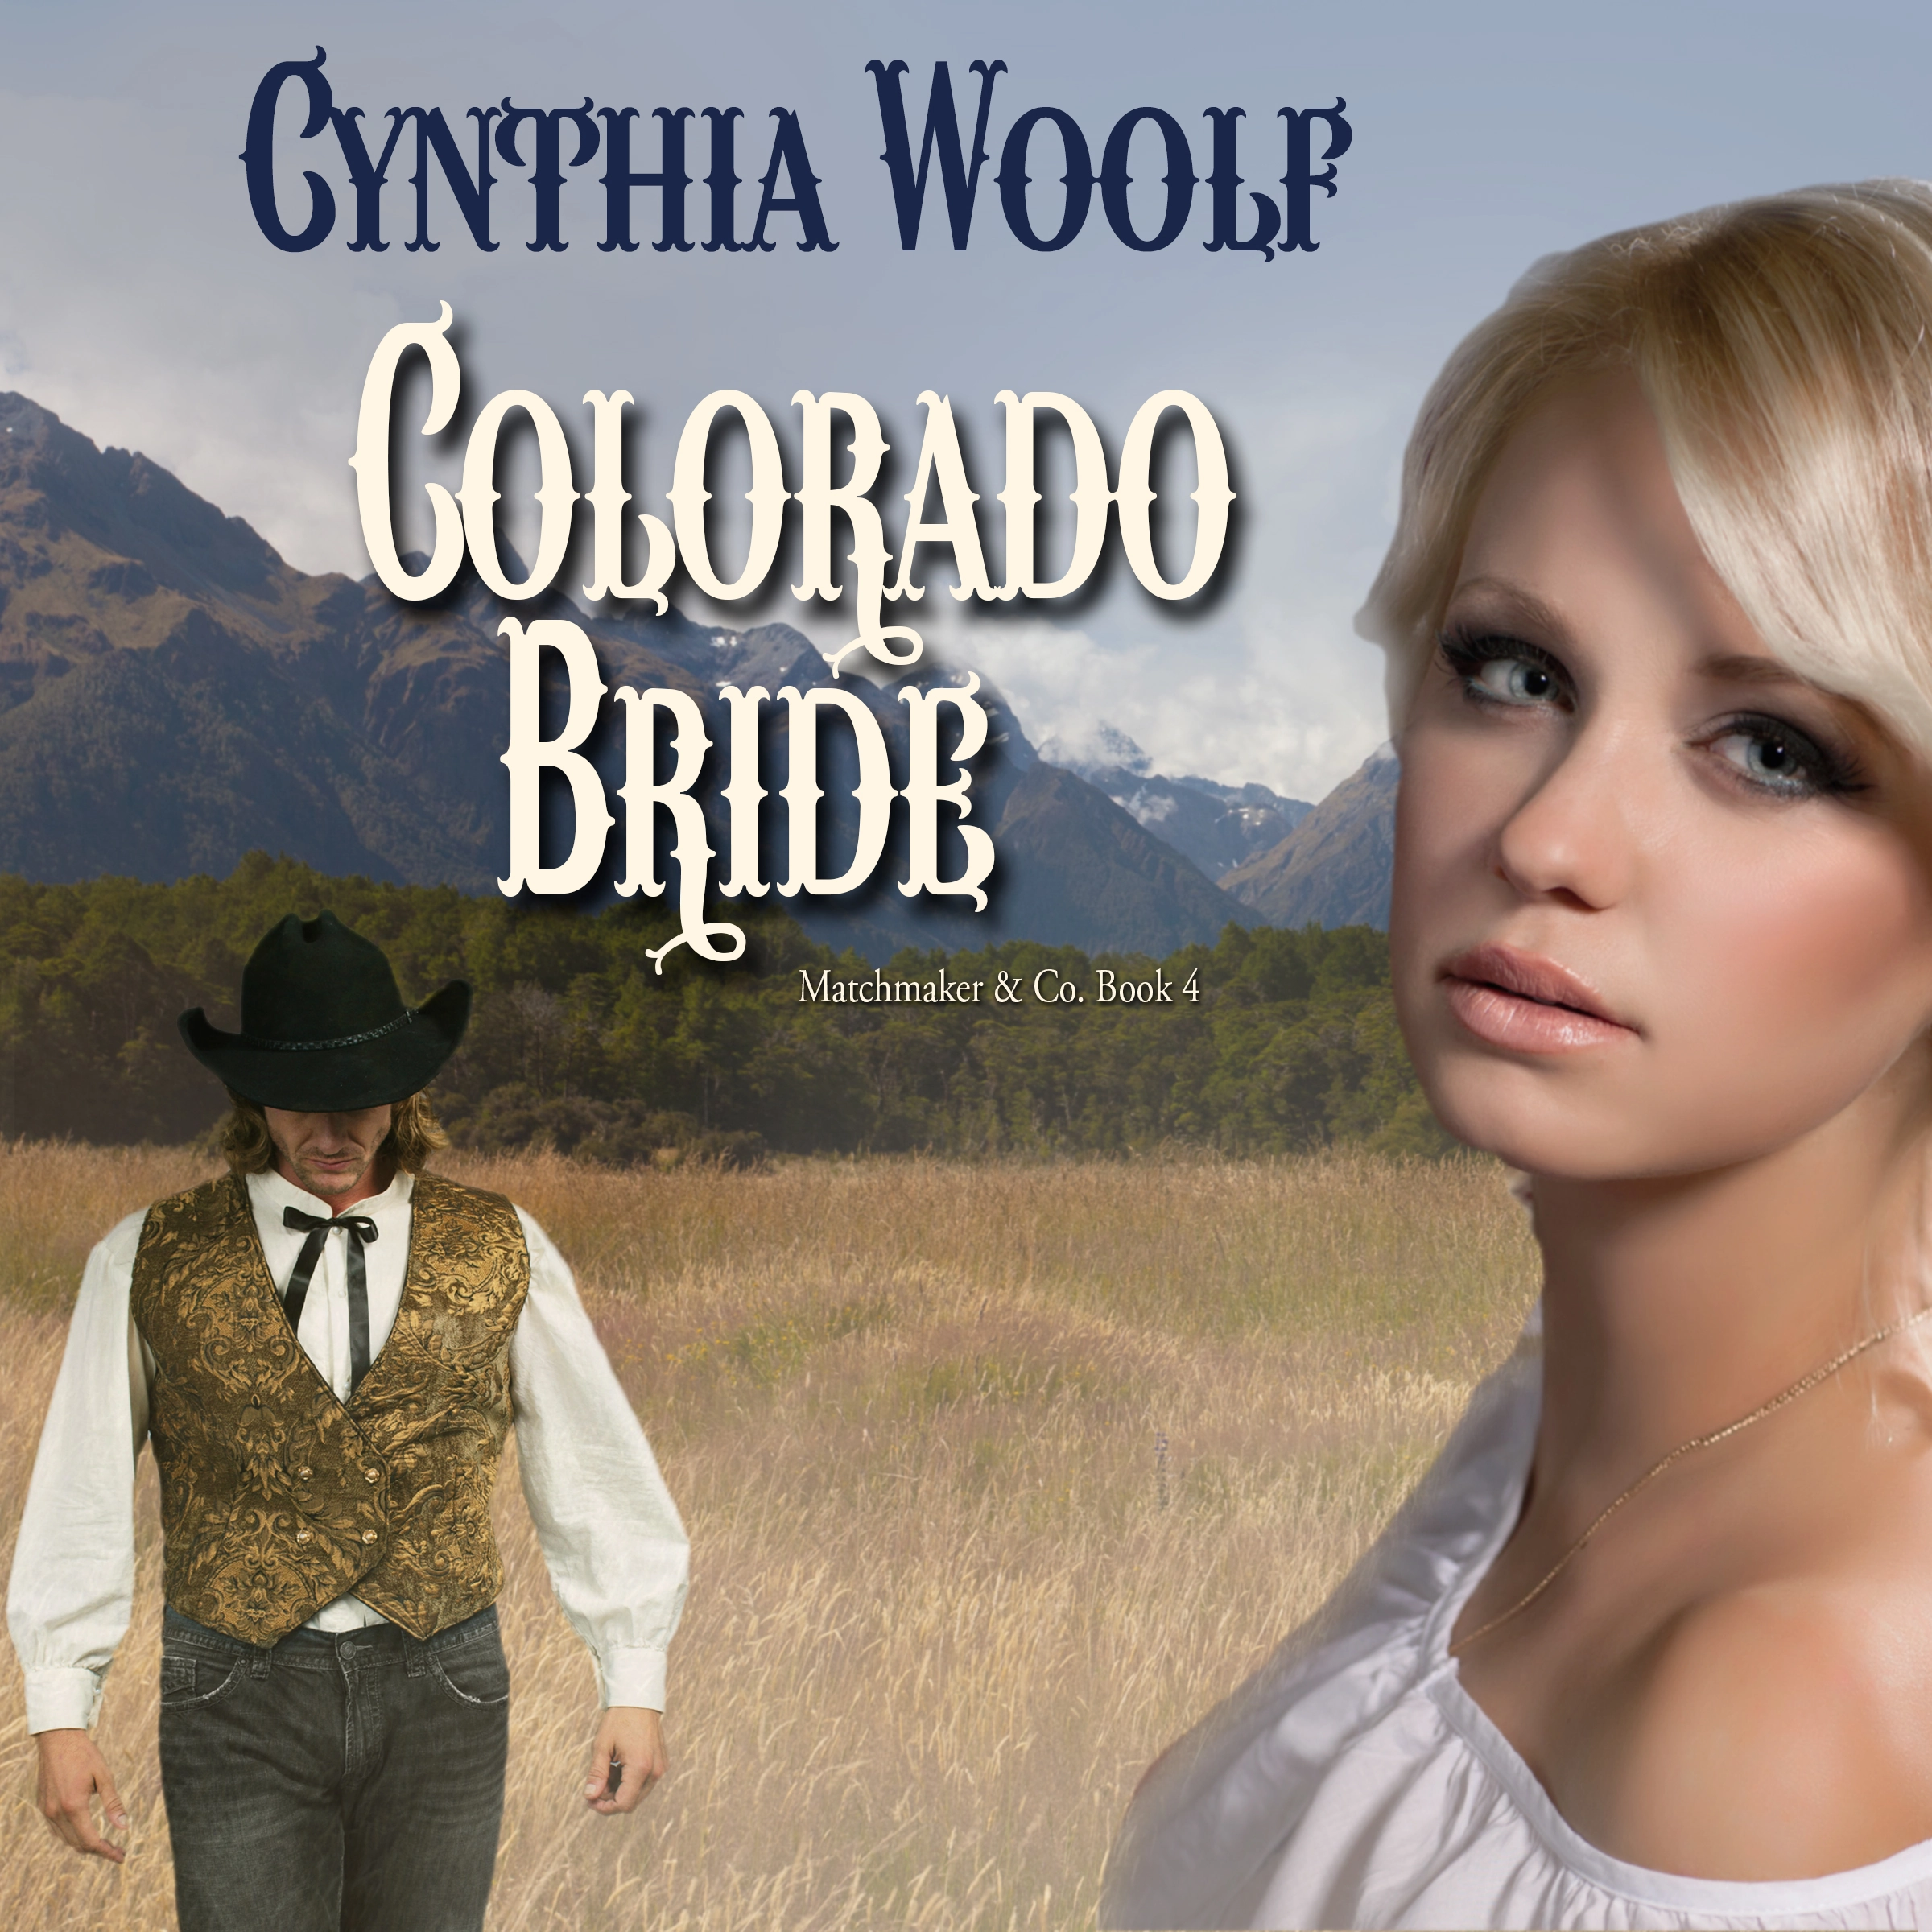 Colorado Bride Audiobook by Cynthia Woolf